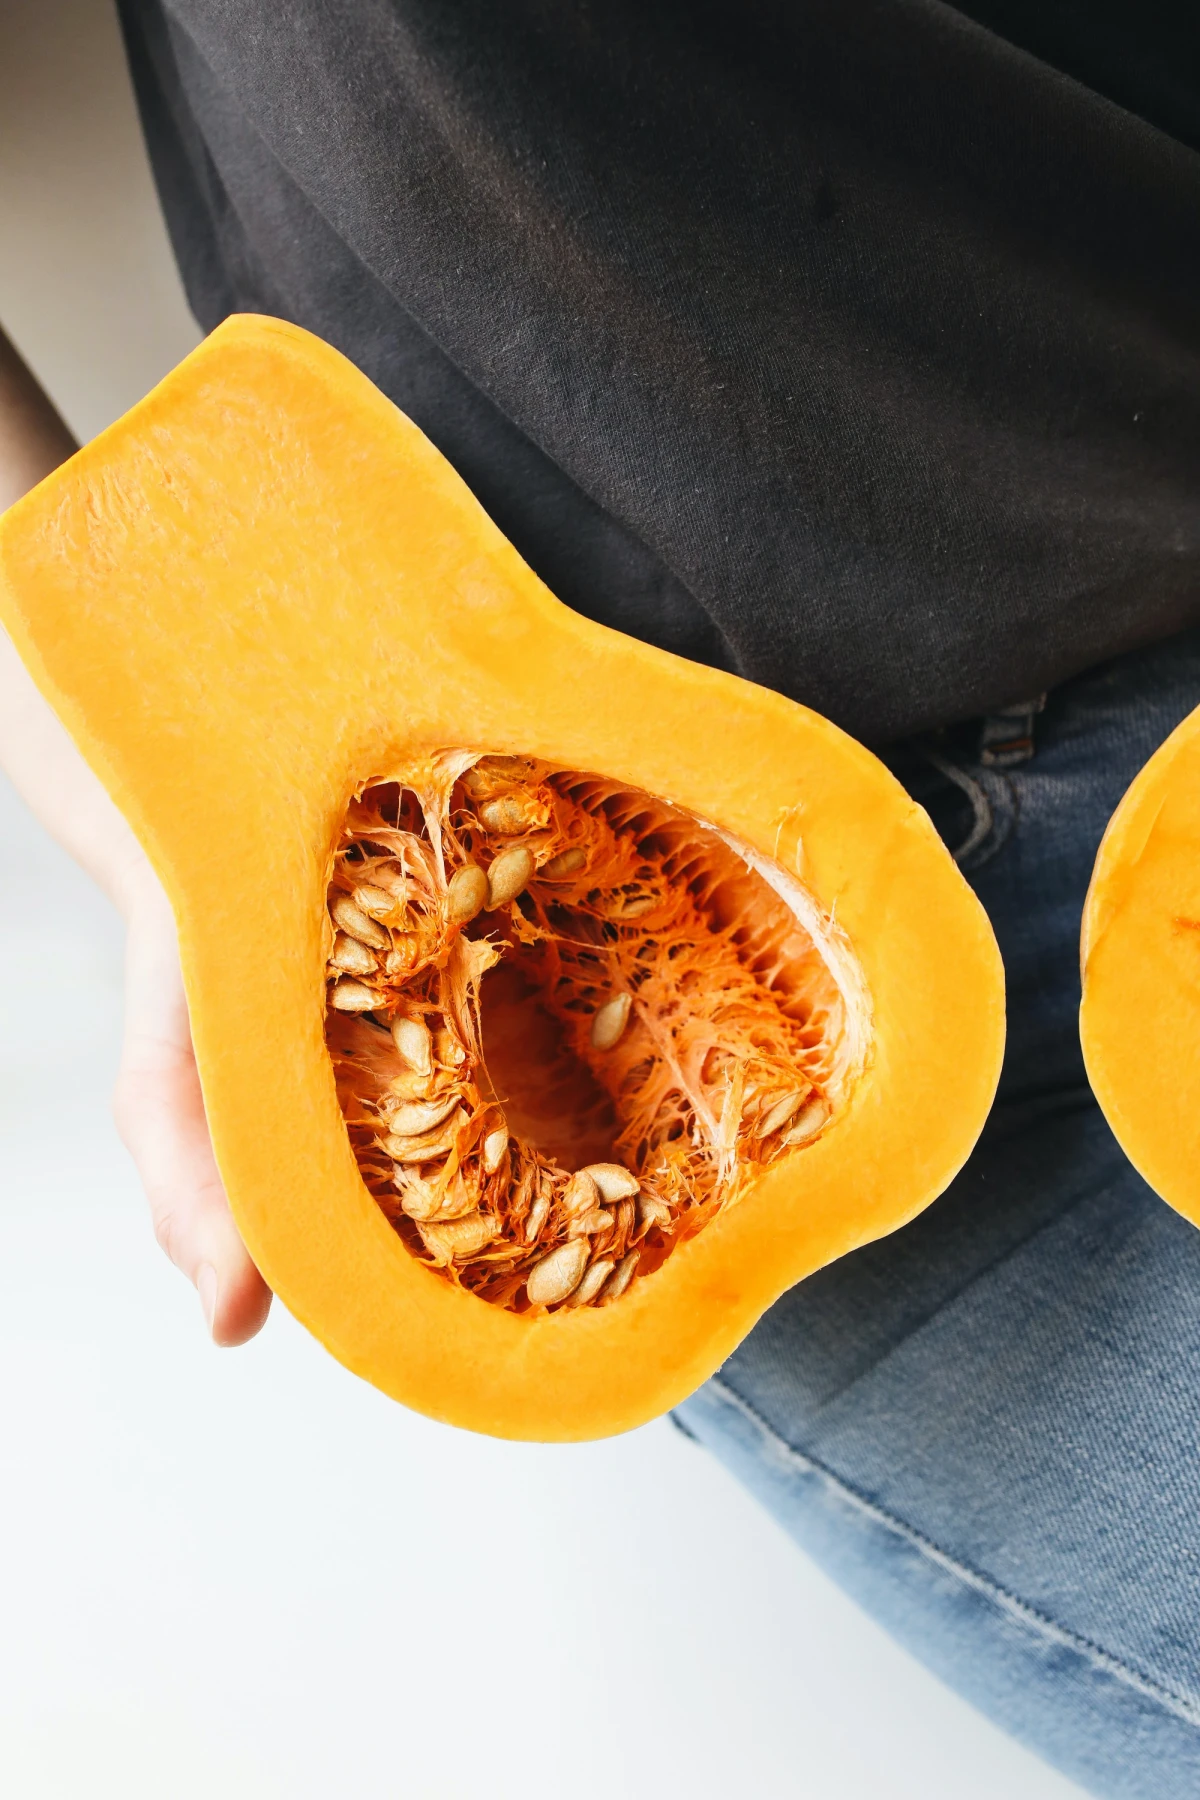 pumpkin with seeds inside